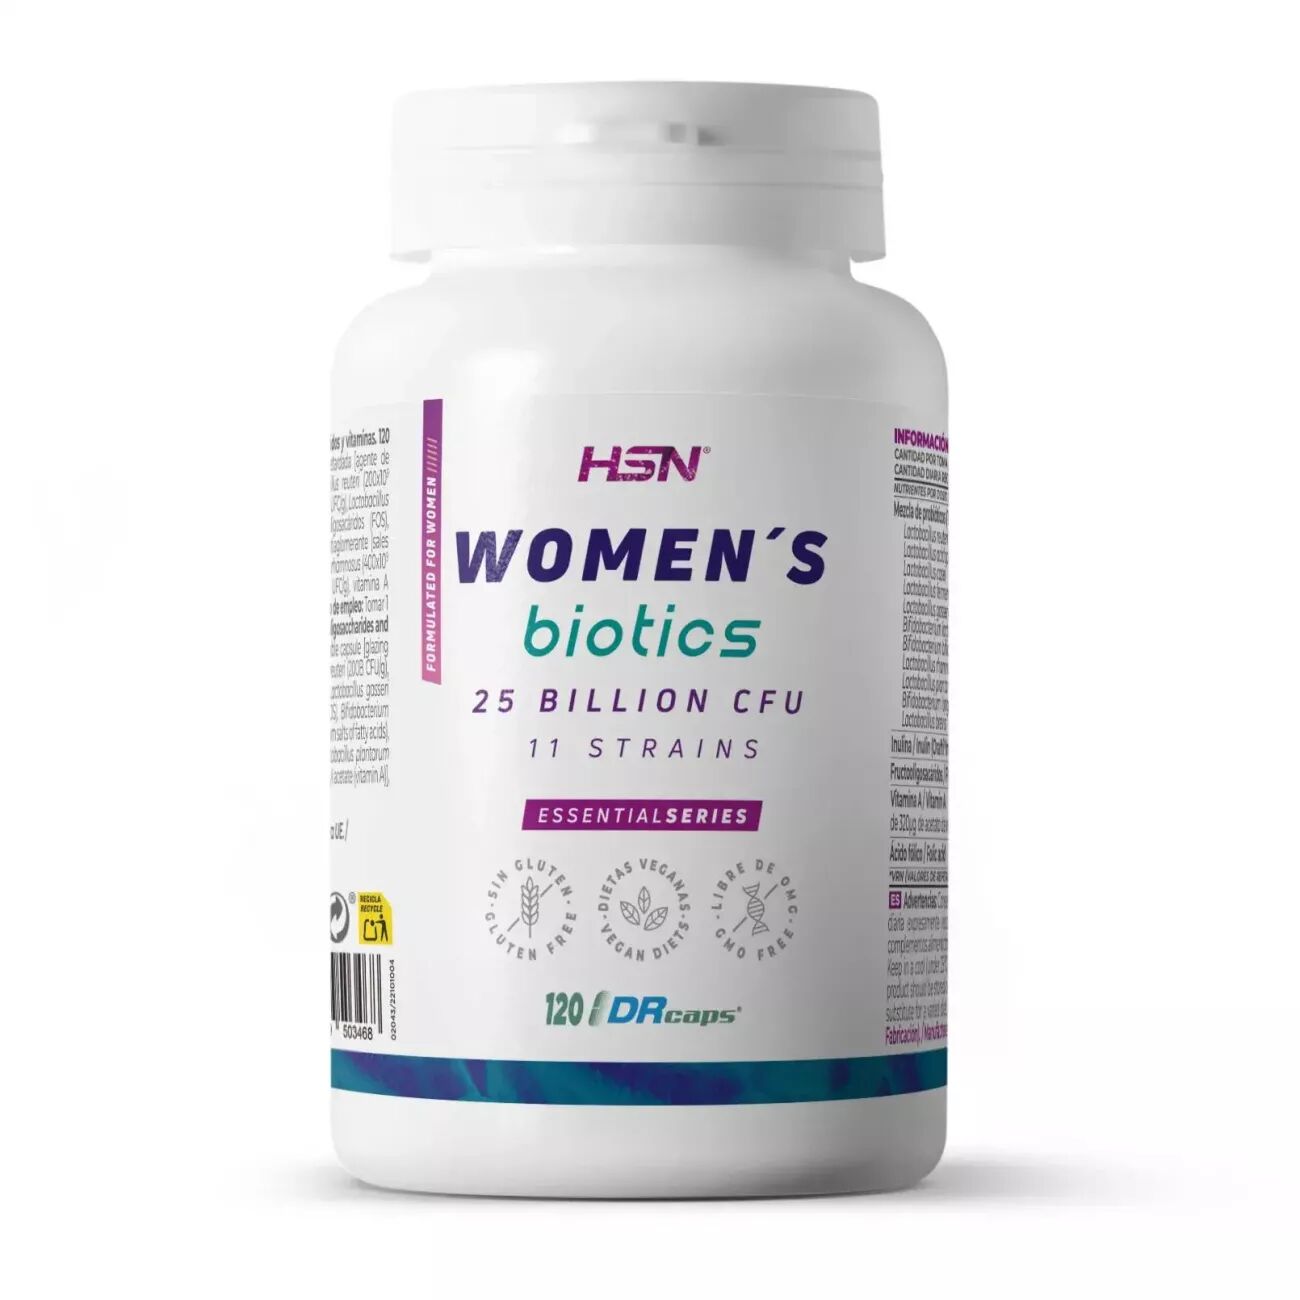 HSN Women's biotics (probióticos) 25b ufc 120 veg caps